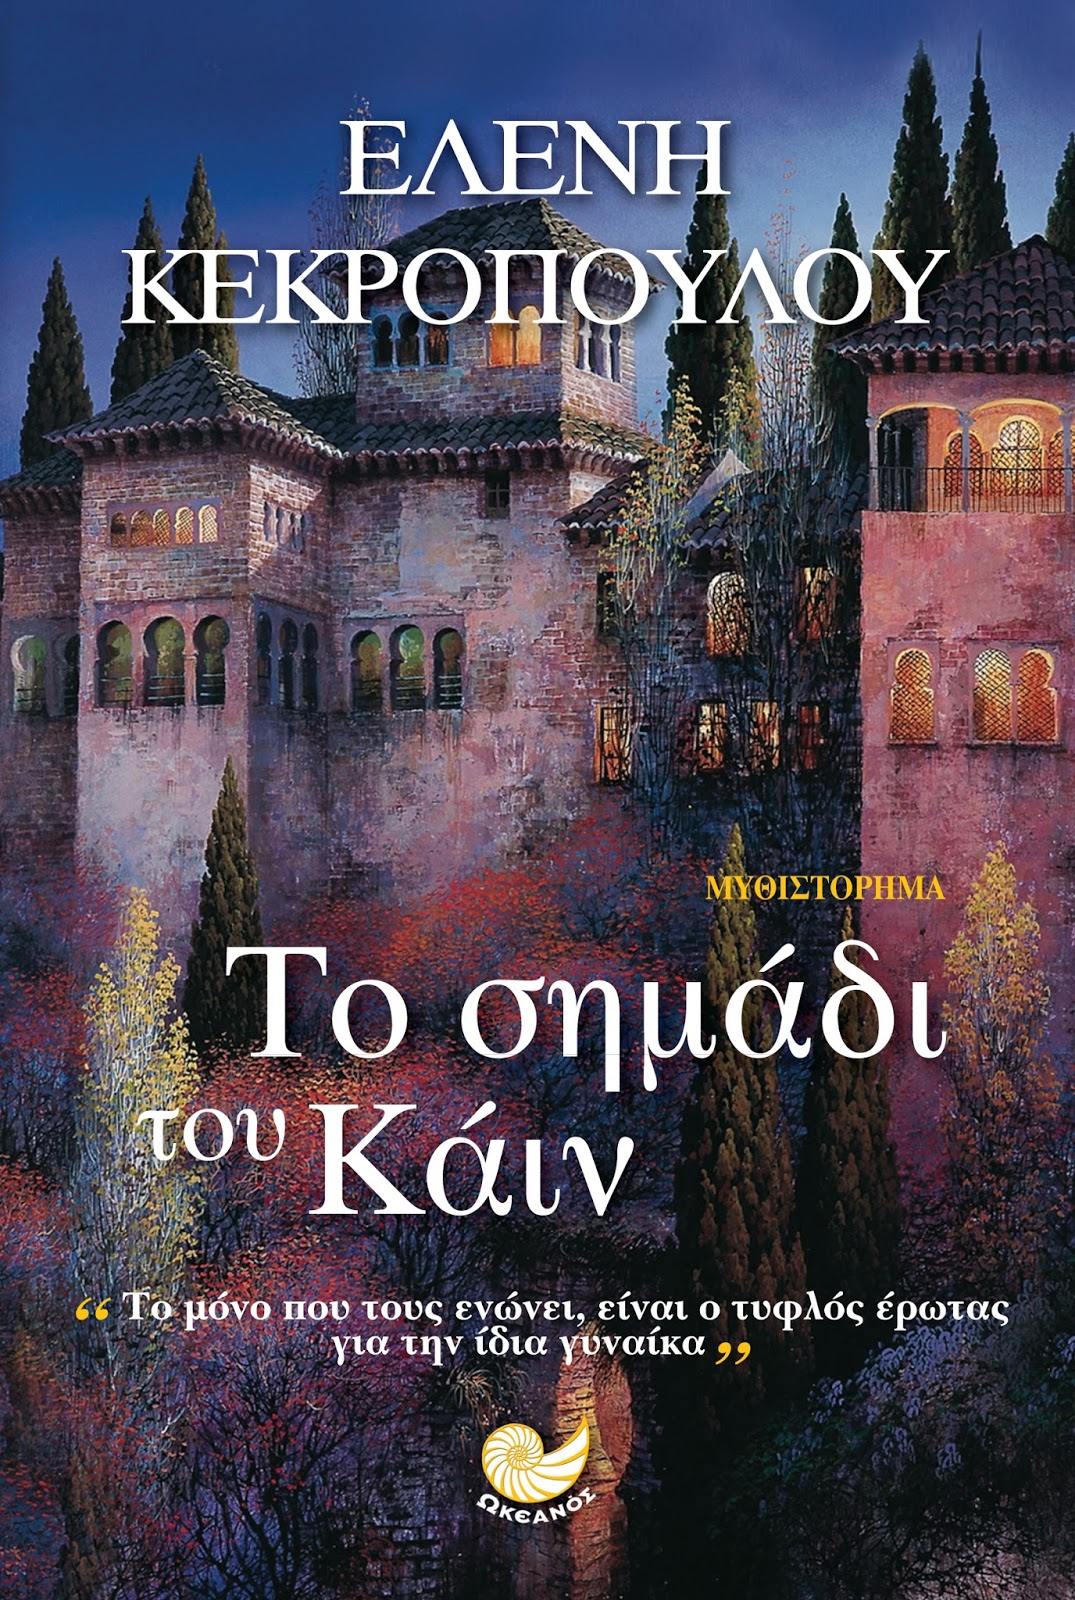 τα καλυτερα βιβλια ελληνικησ ιστοριασ